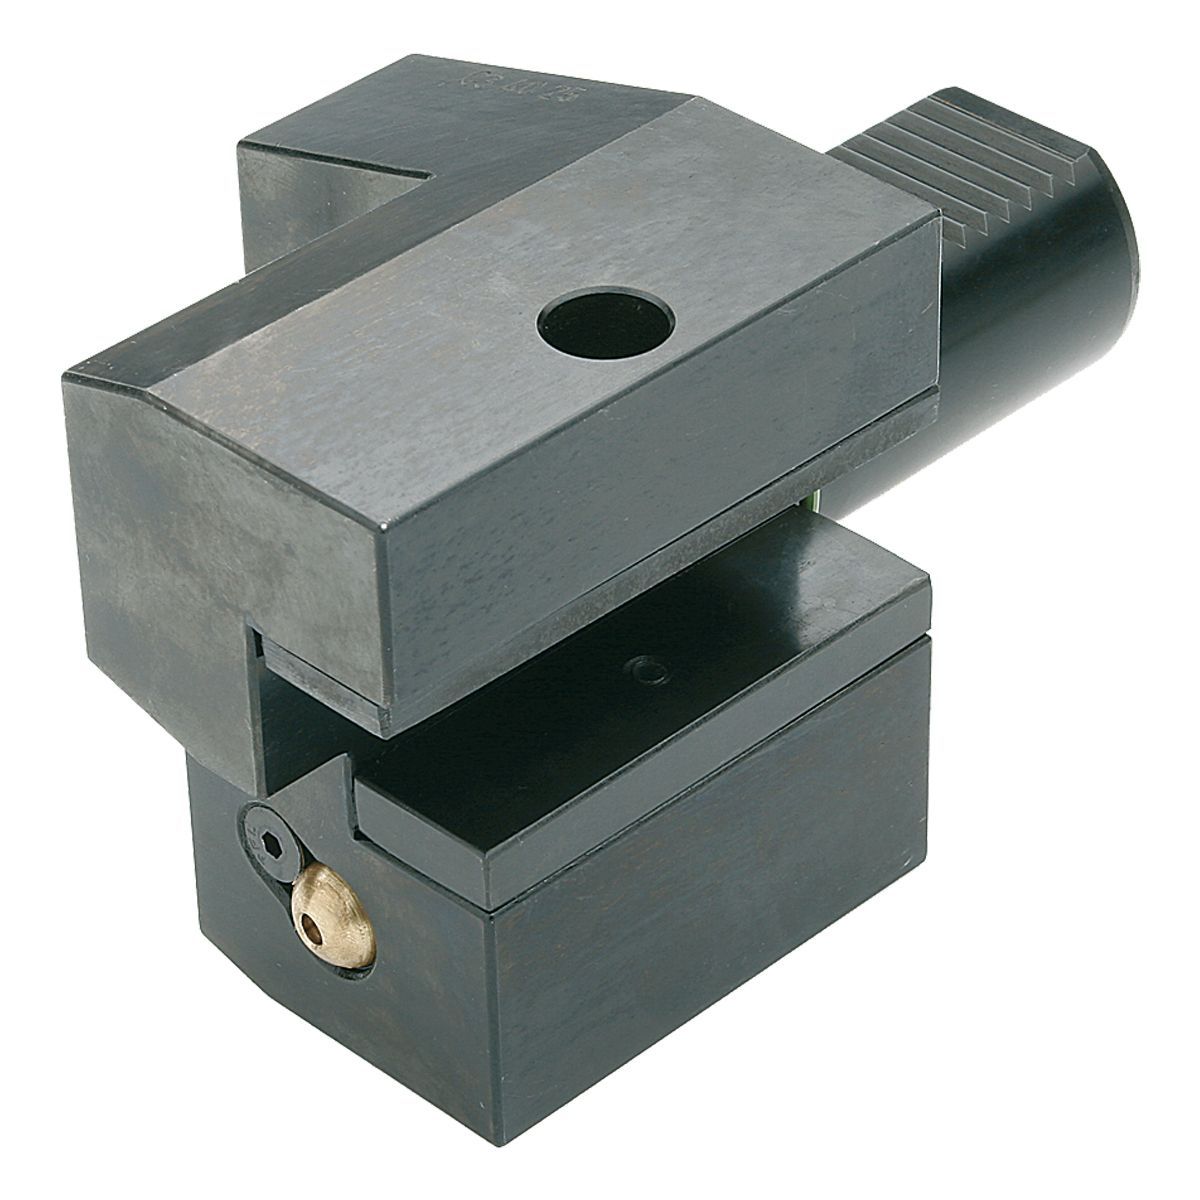 Axial-Werkzeughalter C3-25x16 DIN 69880 (ISO 10889)